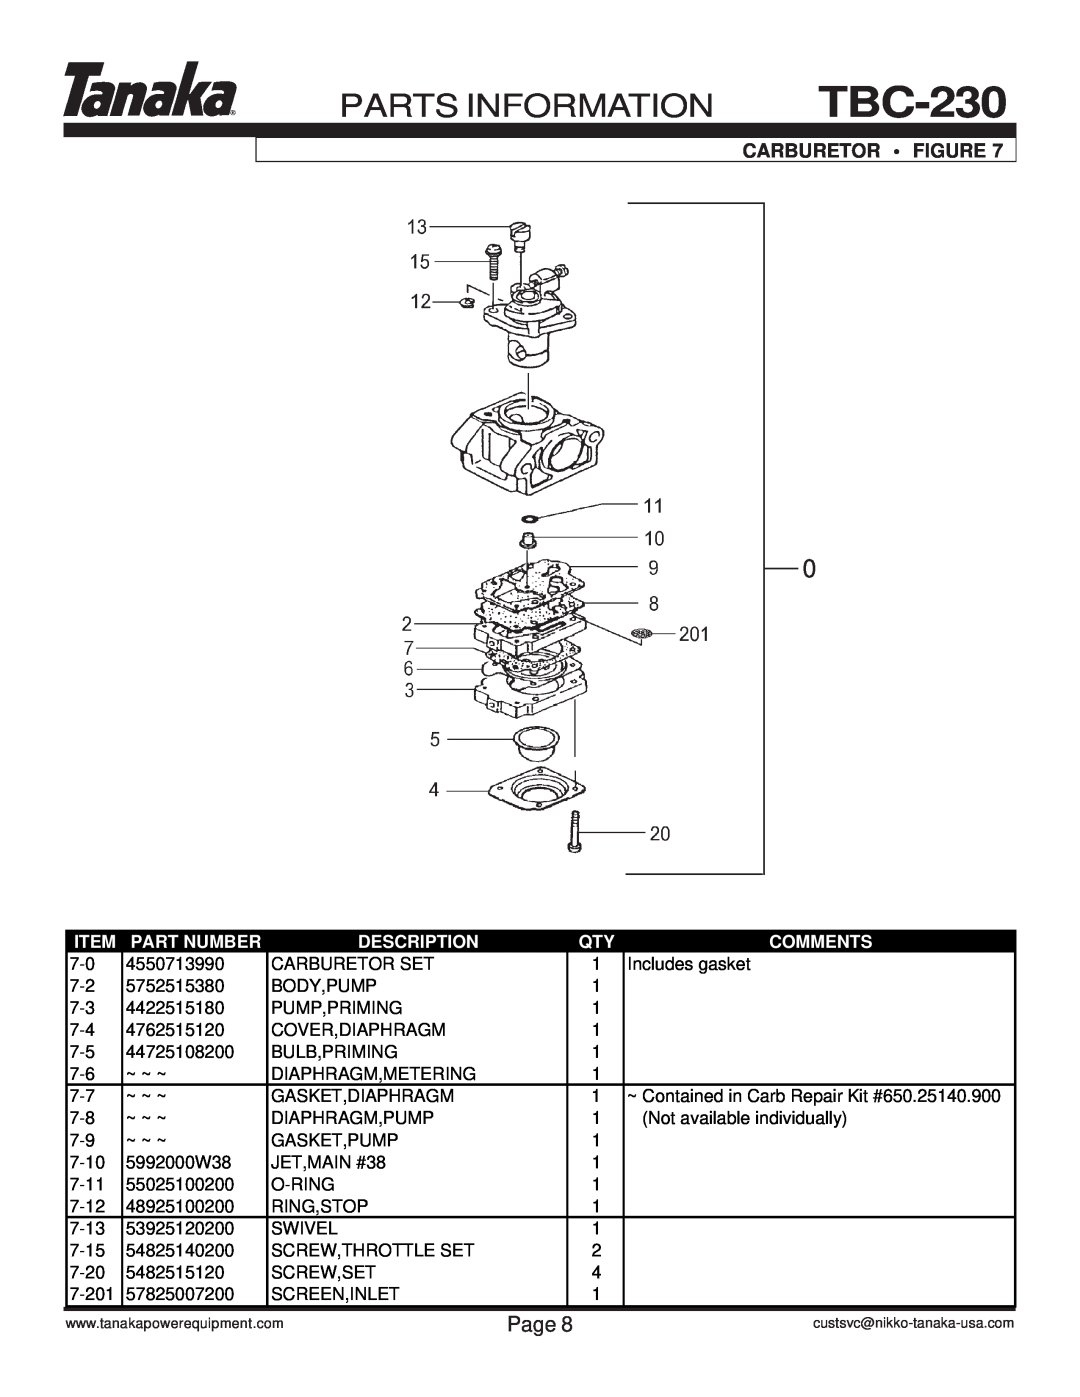 Tanaka TBC-230 manual Parts Information, Page, Carburetor Figure, Part Number, Description, Comments 